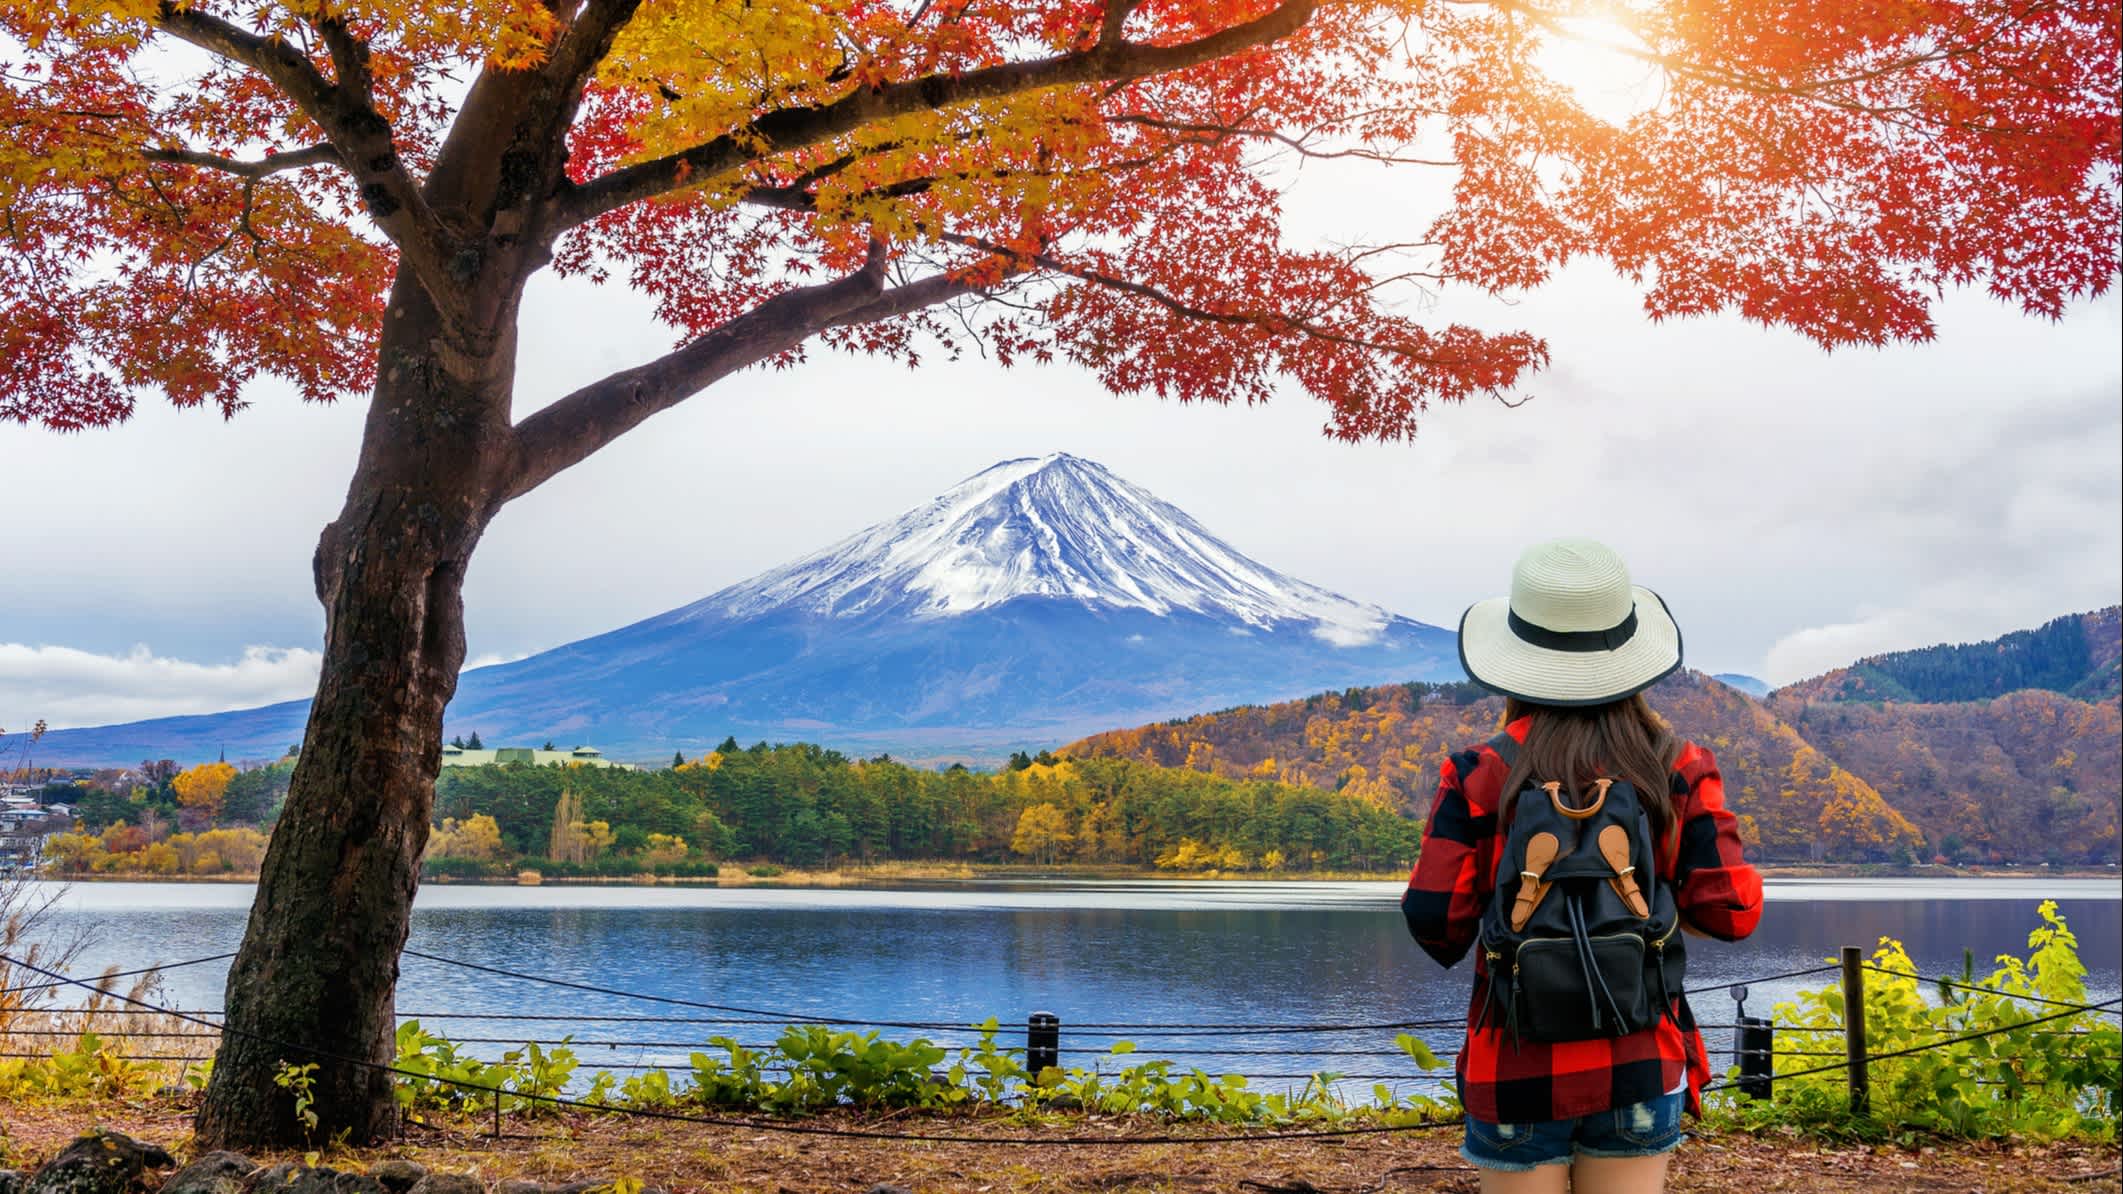 Touriste avec sac à dos devant les monts Fuji en automne, Japon.

